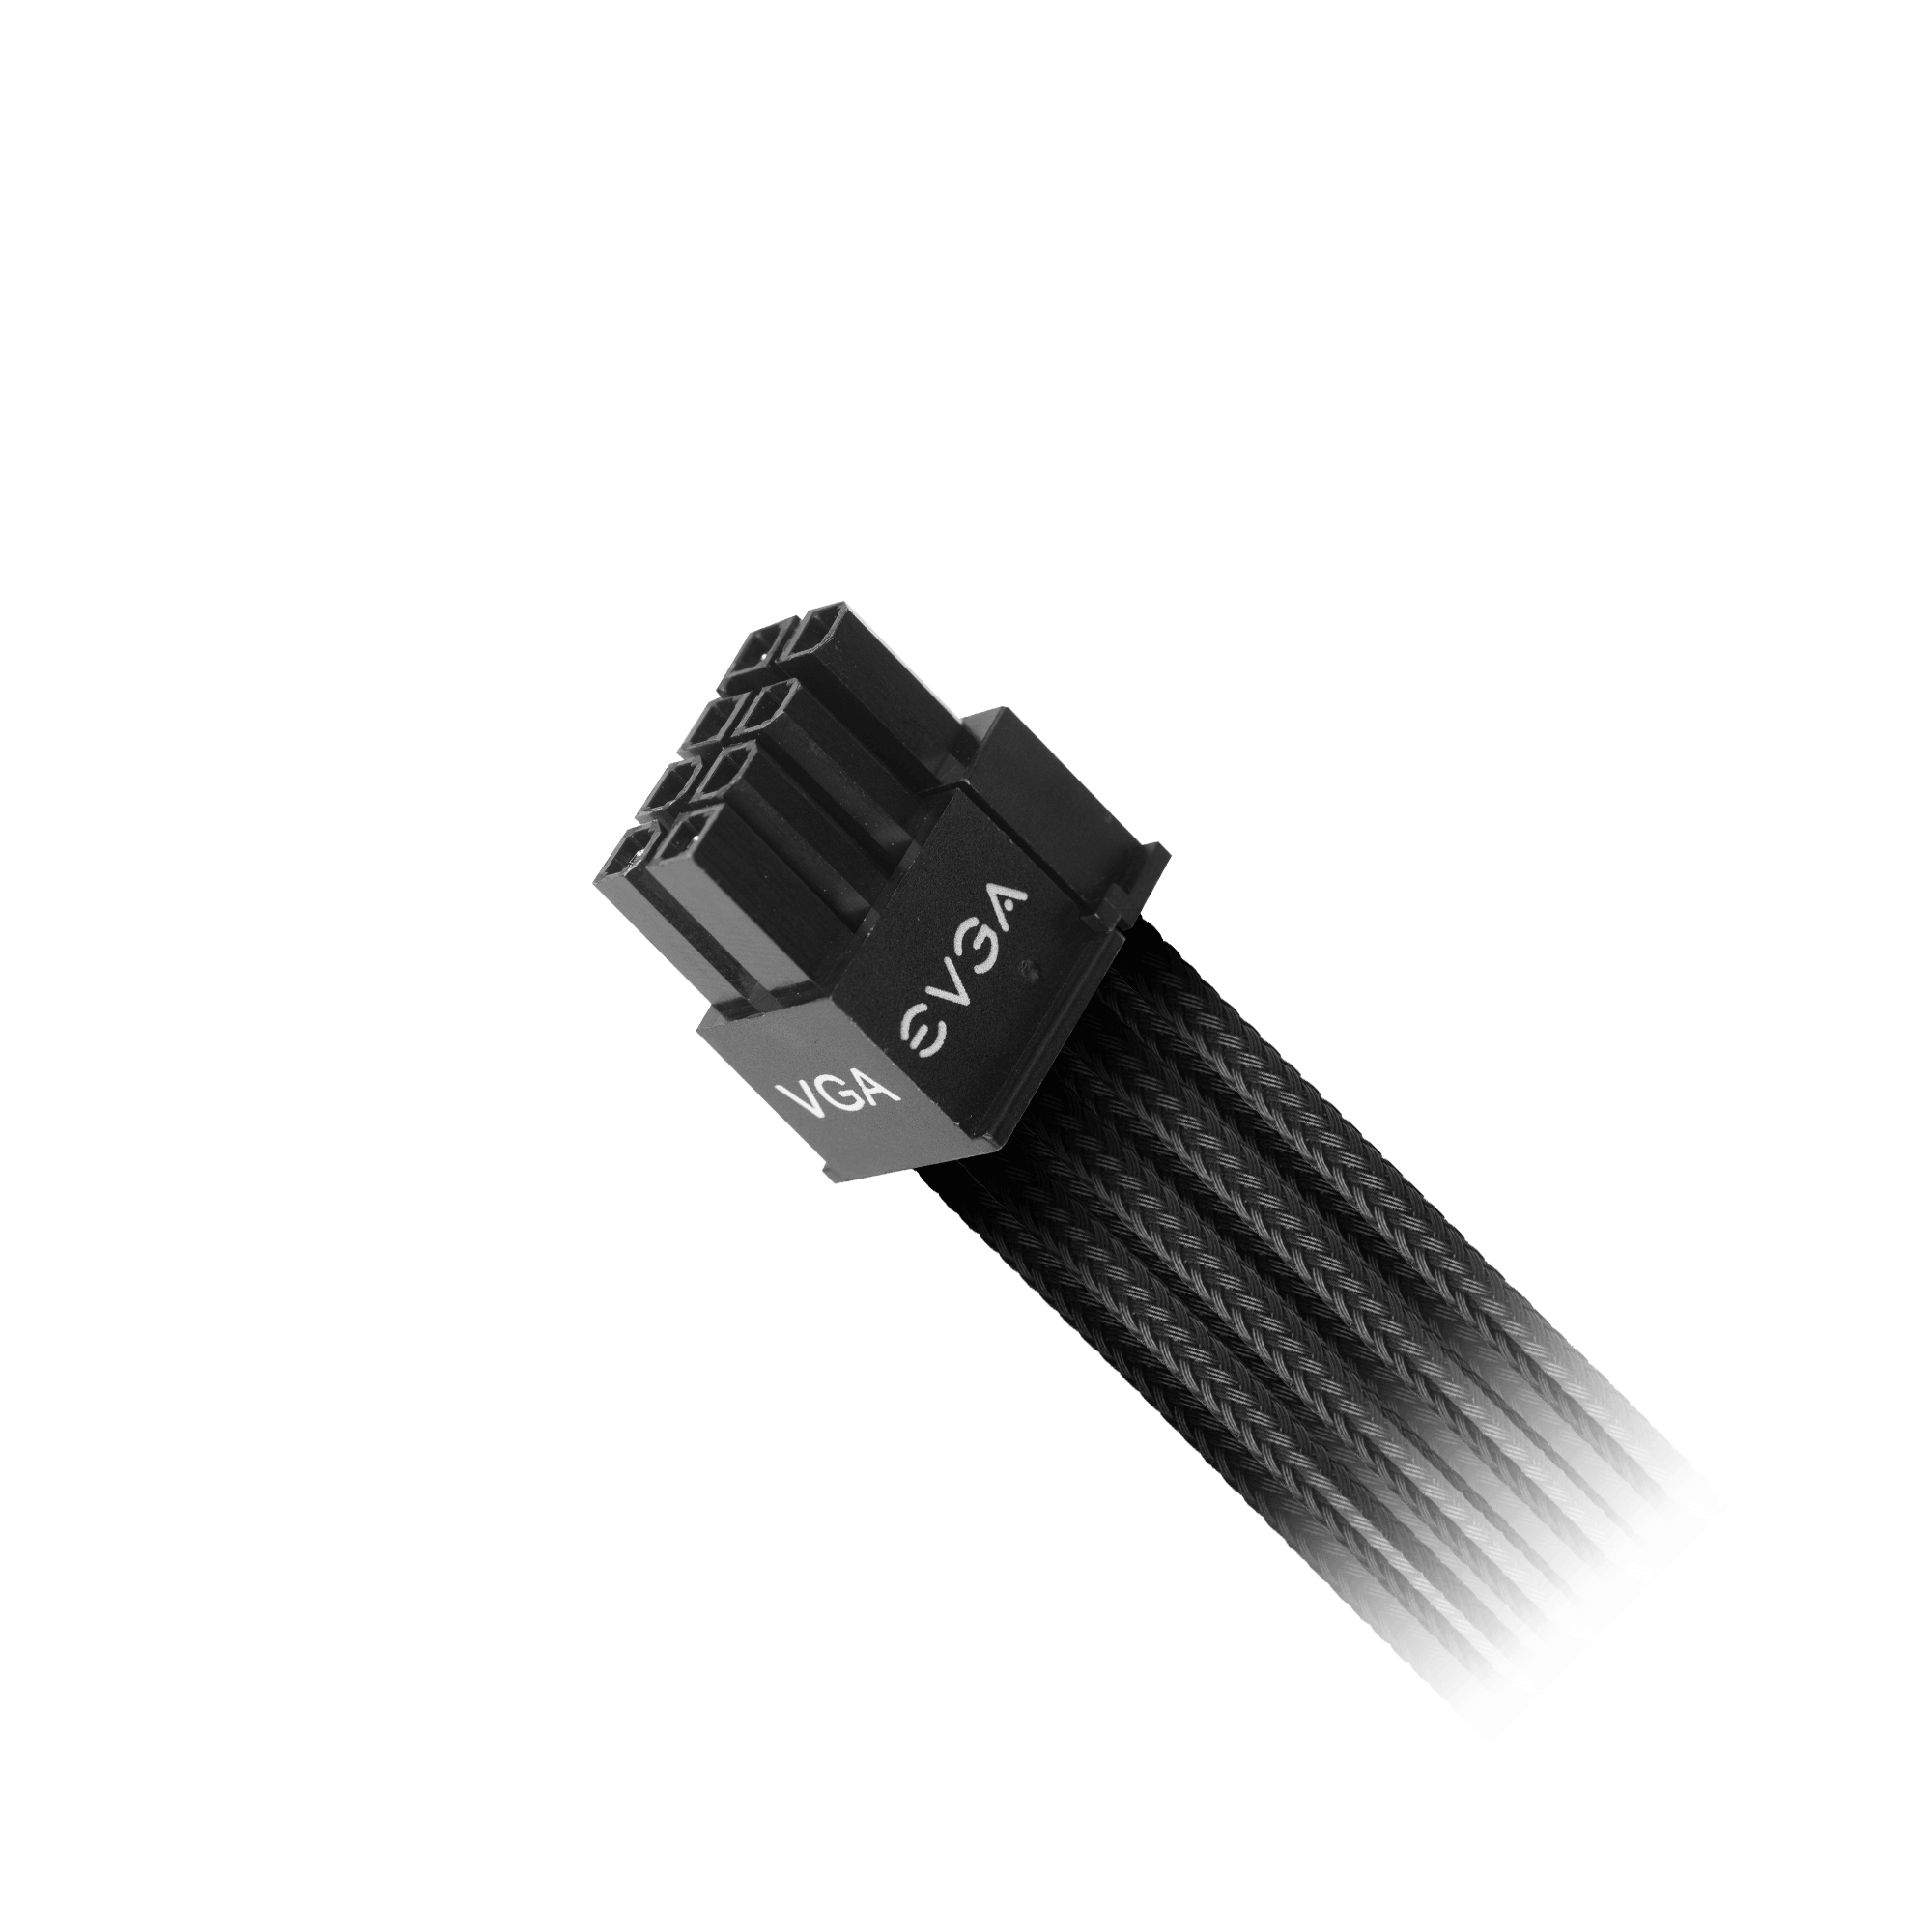 Evga Supernova CPU 8 pin a pin 8 trenzado Original cable de fuente de alimentación 4+4 